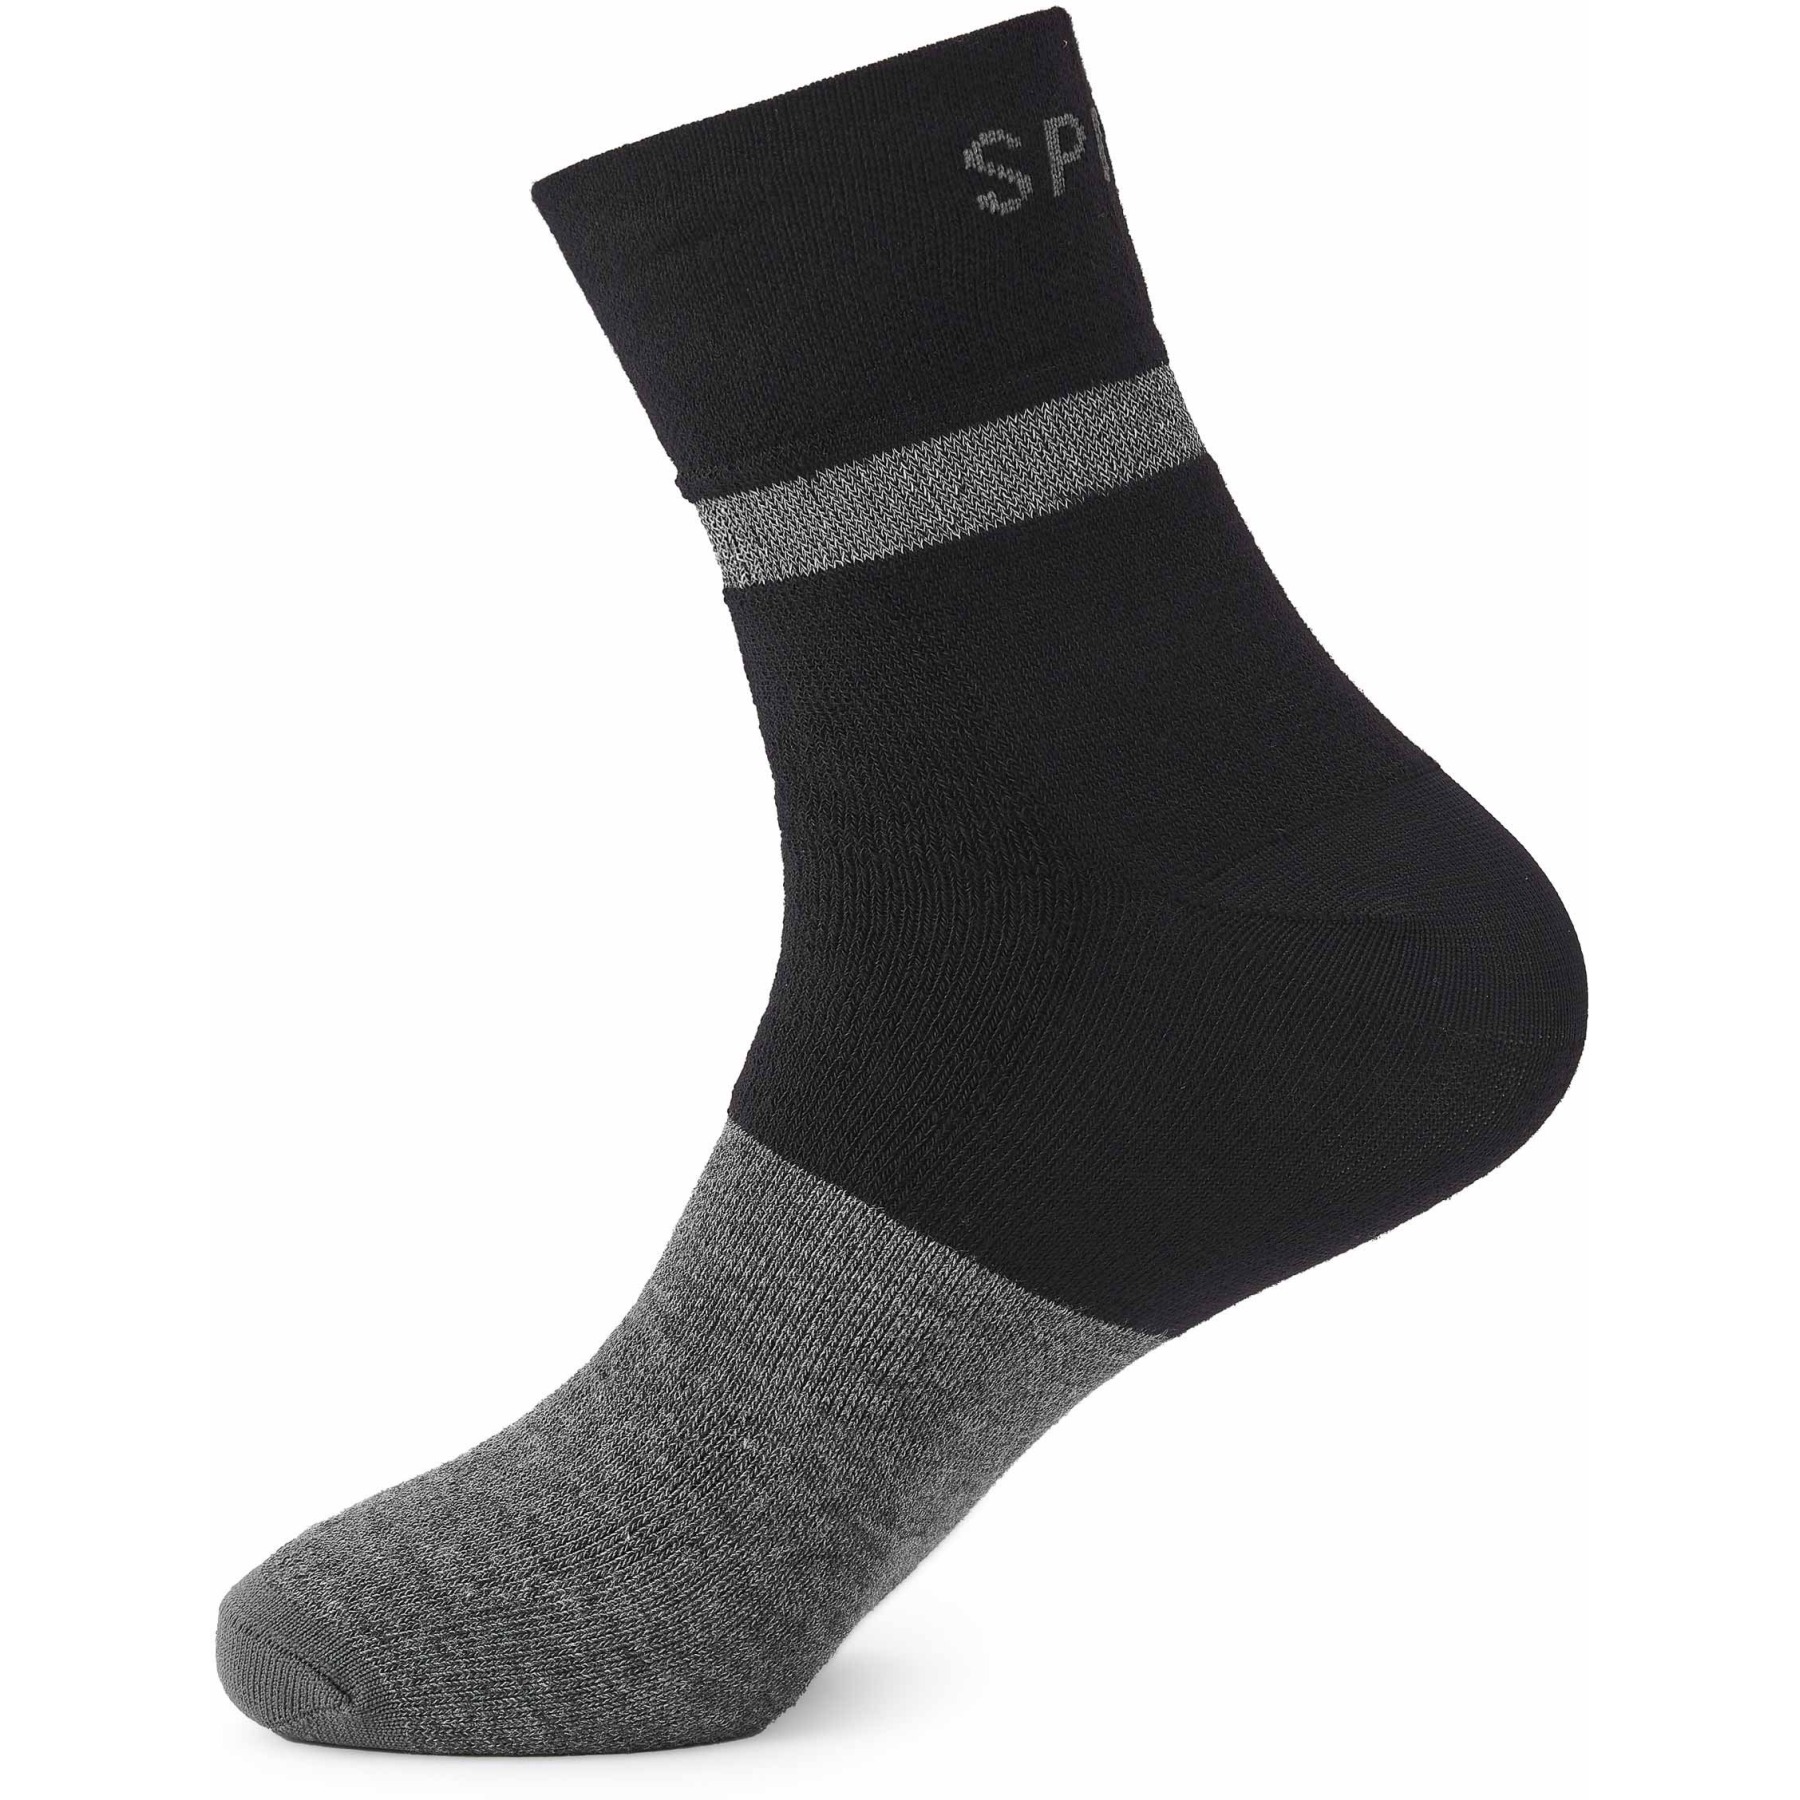 Produktbild von Spiuk TOP TEN Winter Medium Socken - schwarz TOWME21N